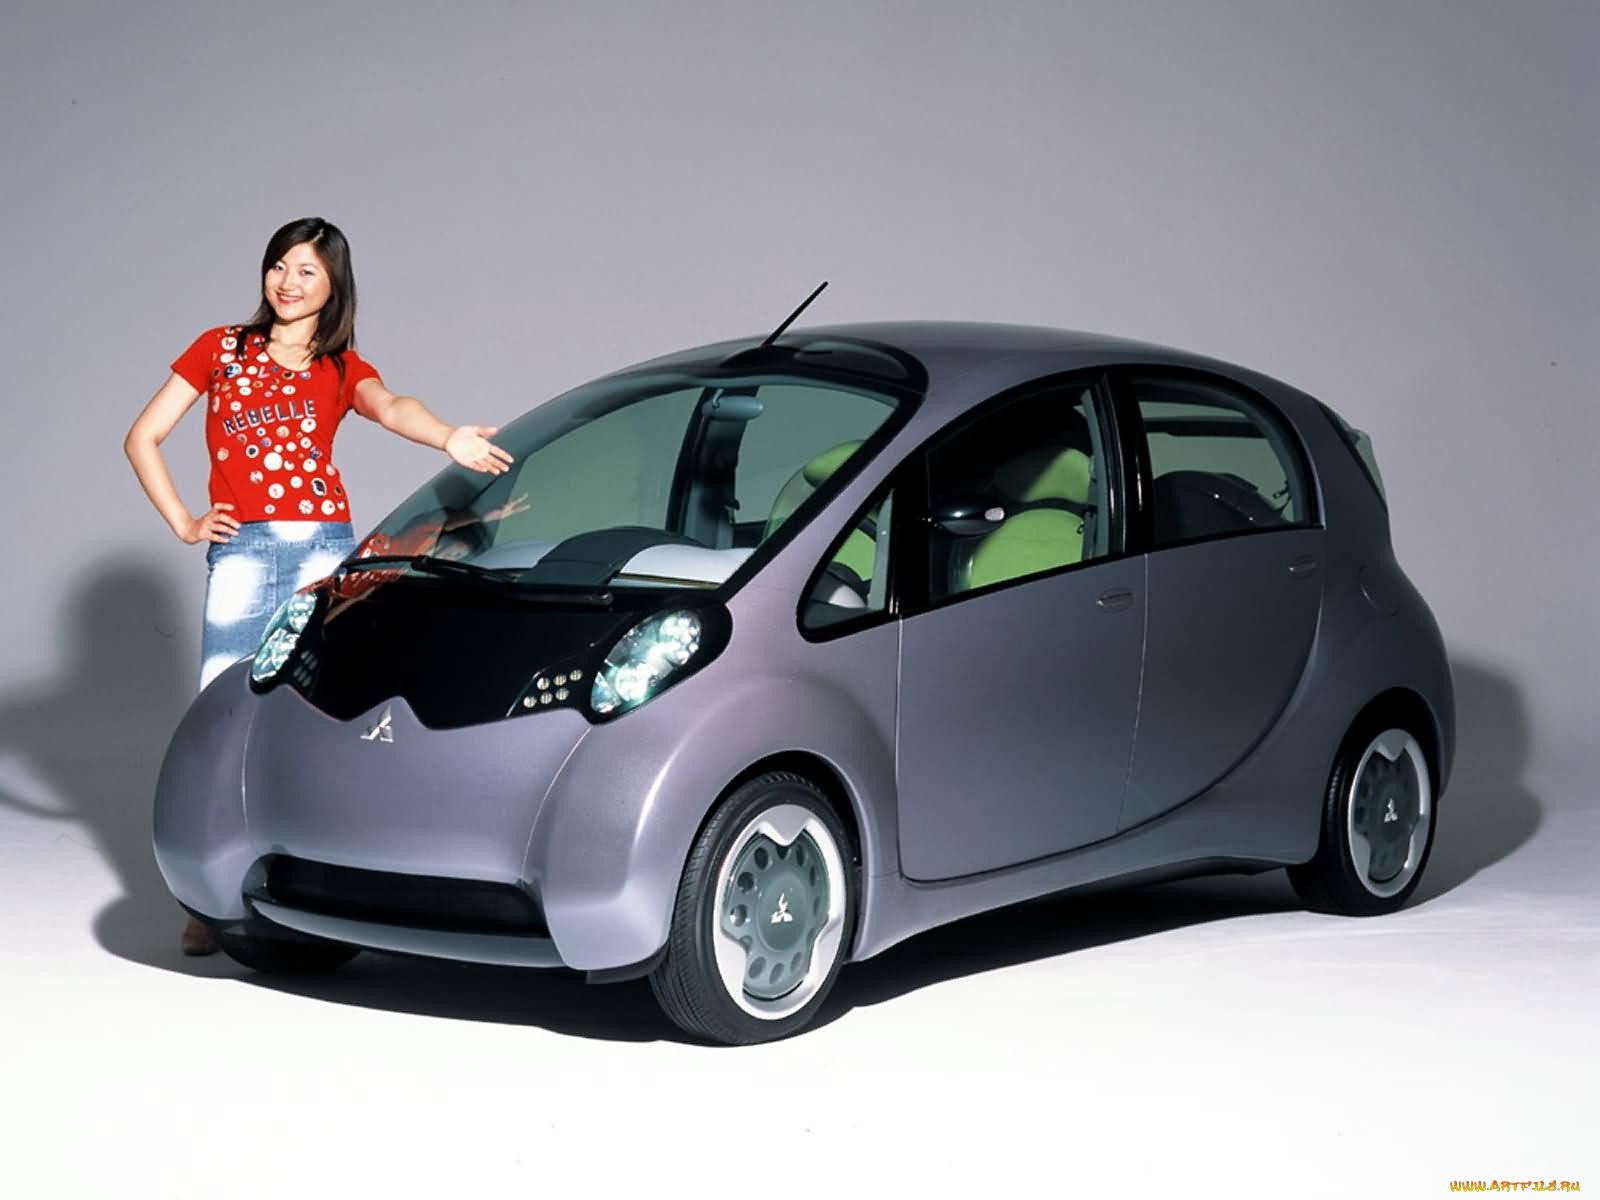 Мицубиси самая самая. Mitsubishi маленькая машина. Mitsubishi машина маленькая 2008. Миниатюрные машины для девушек. Компактные машины для девушек.